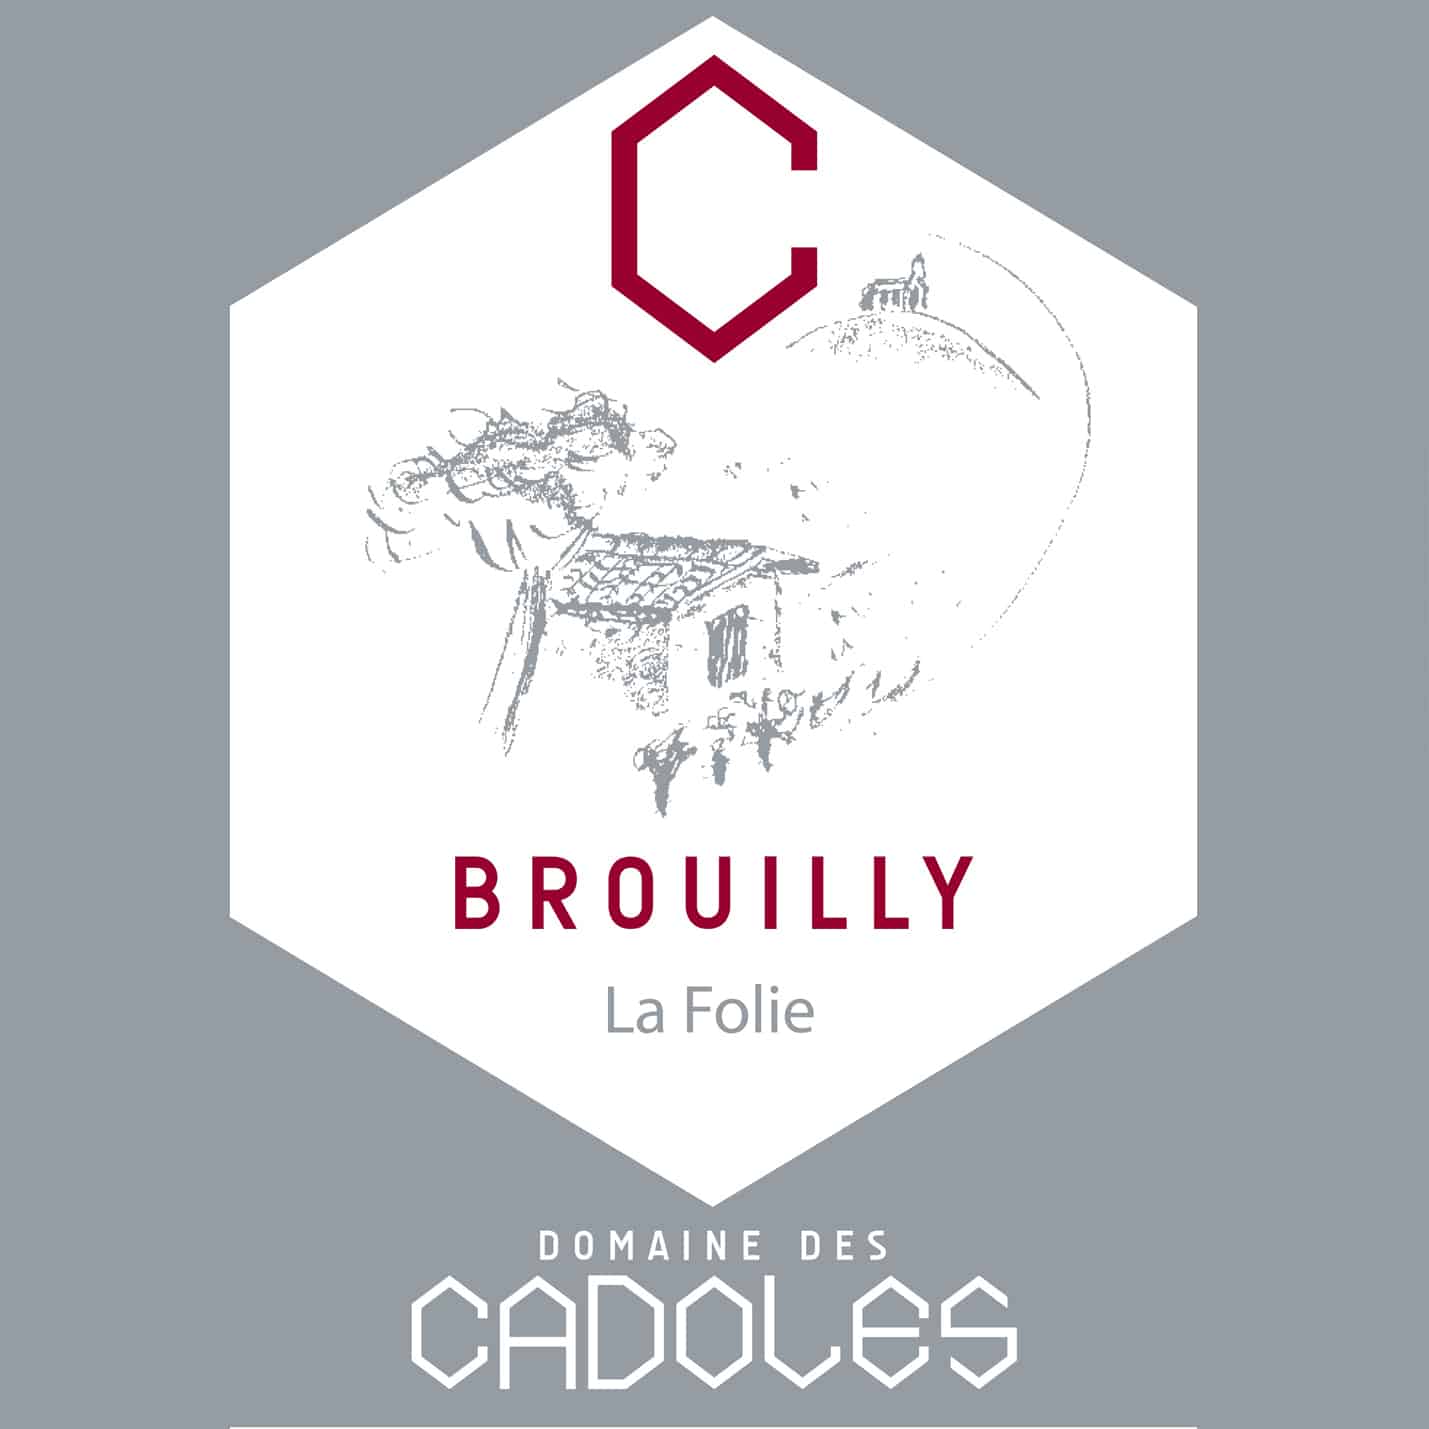 Domaine des Cadoles BROUILLY 2014 La Folie